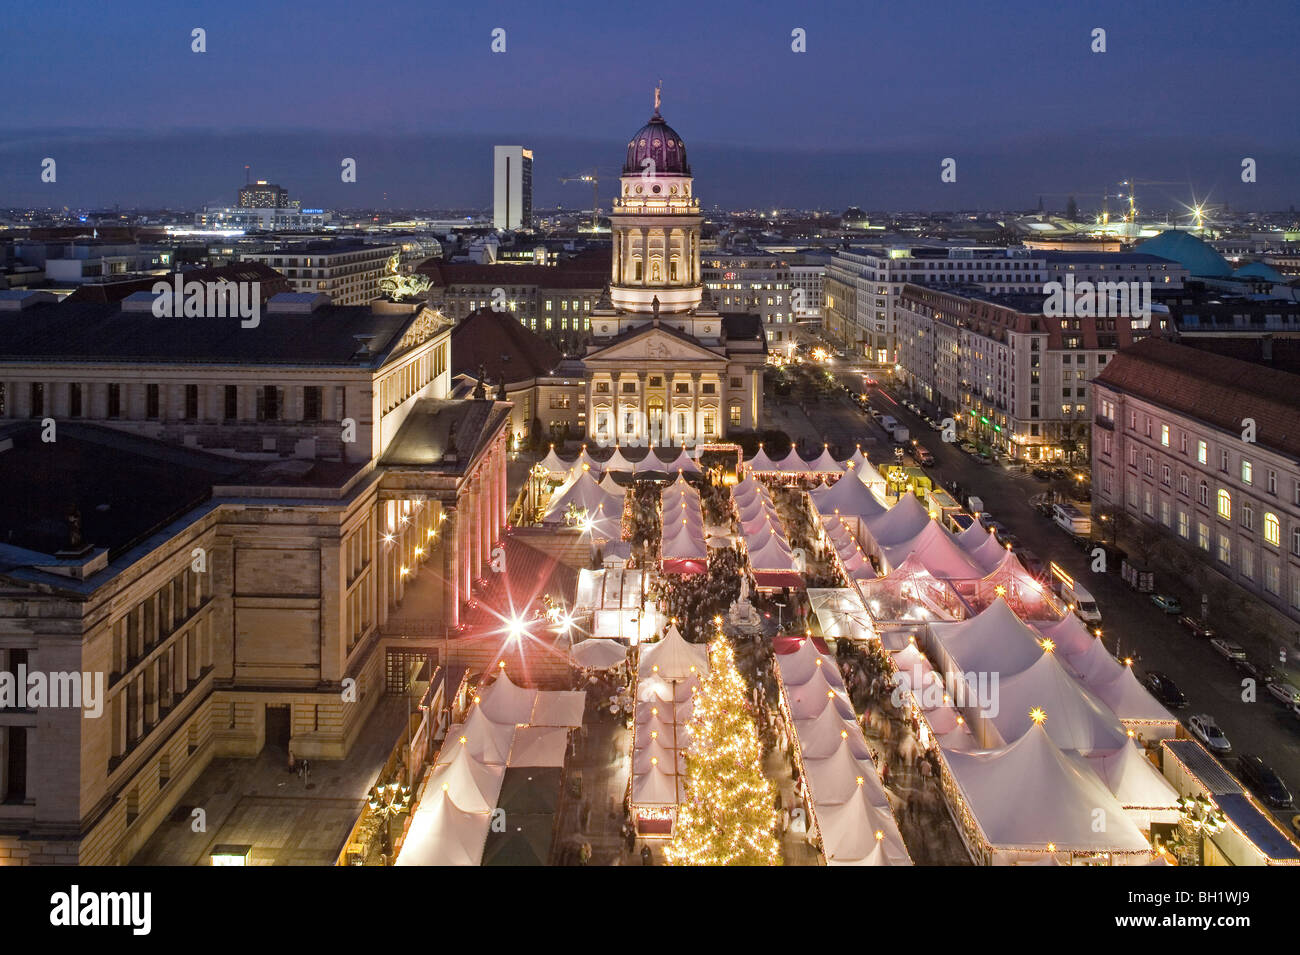 Weihnachtsmarkt, Gendarmenmarkt, in der Nacht, Berlin, Deutschland Stockfoto